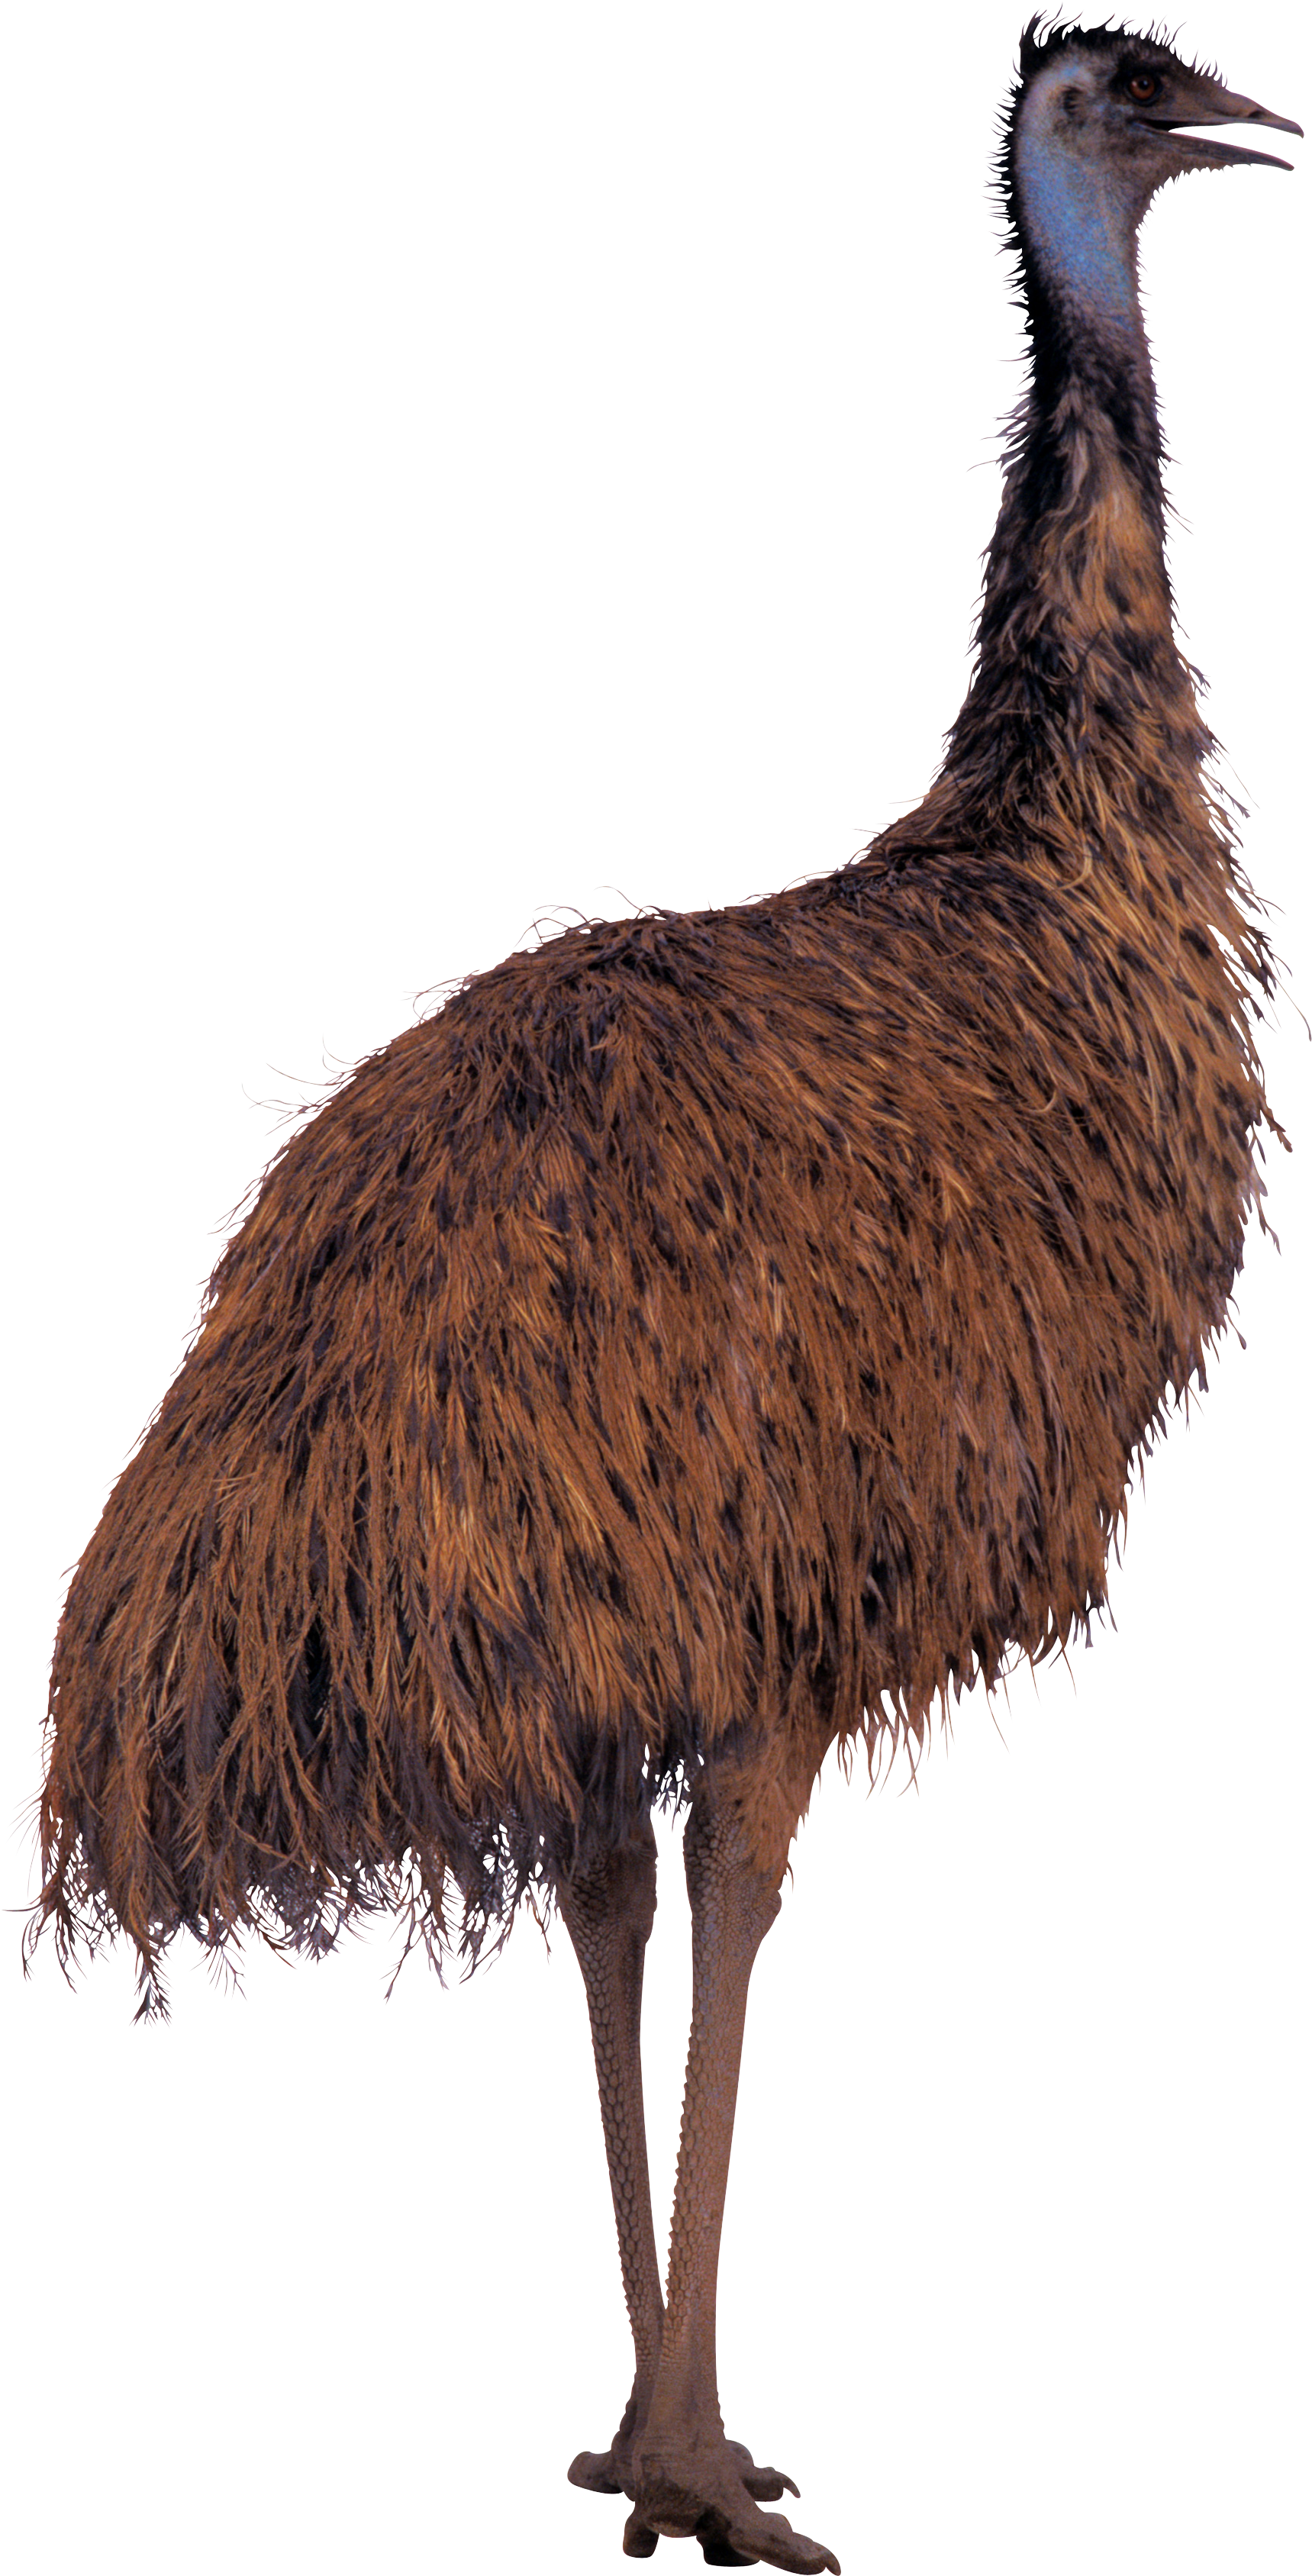 Ostrich - Big Bird Sesame Street (1719x3375)